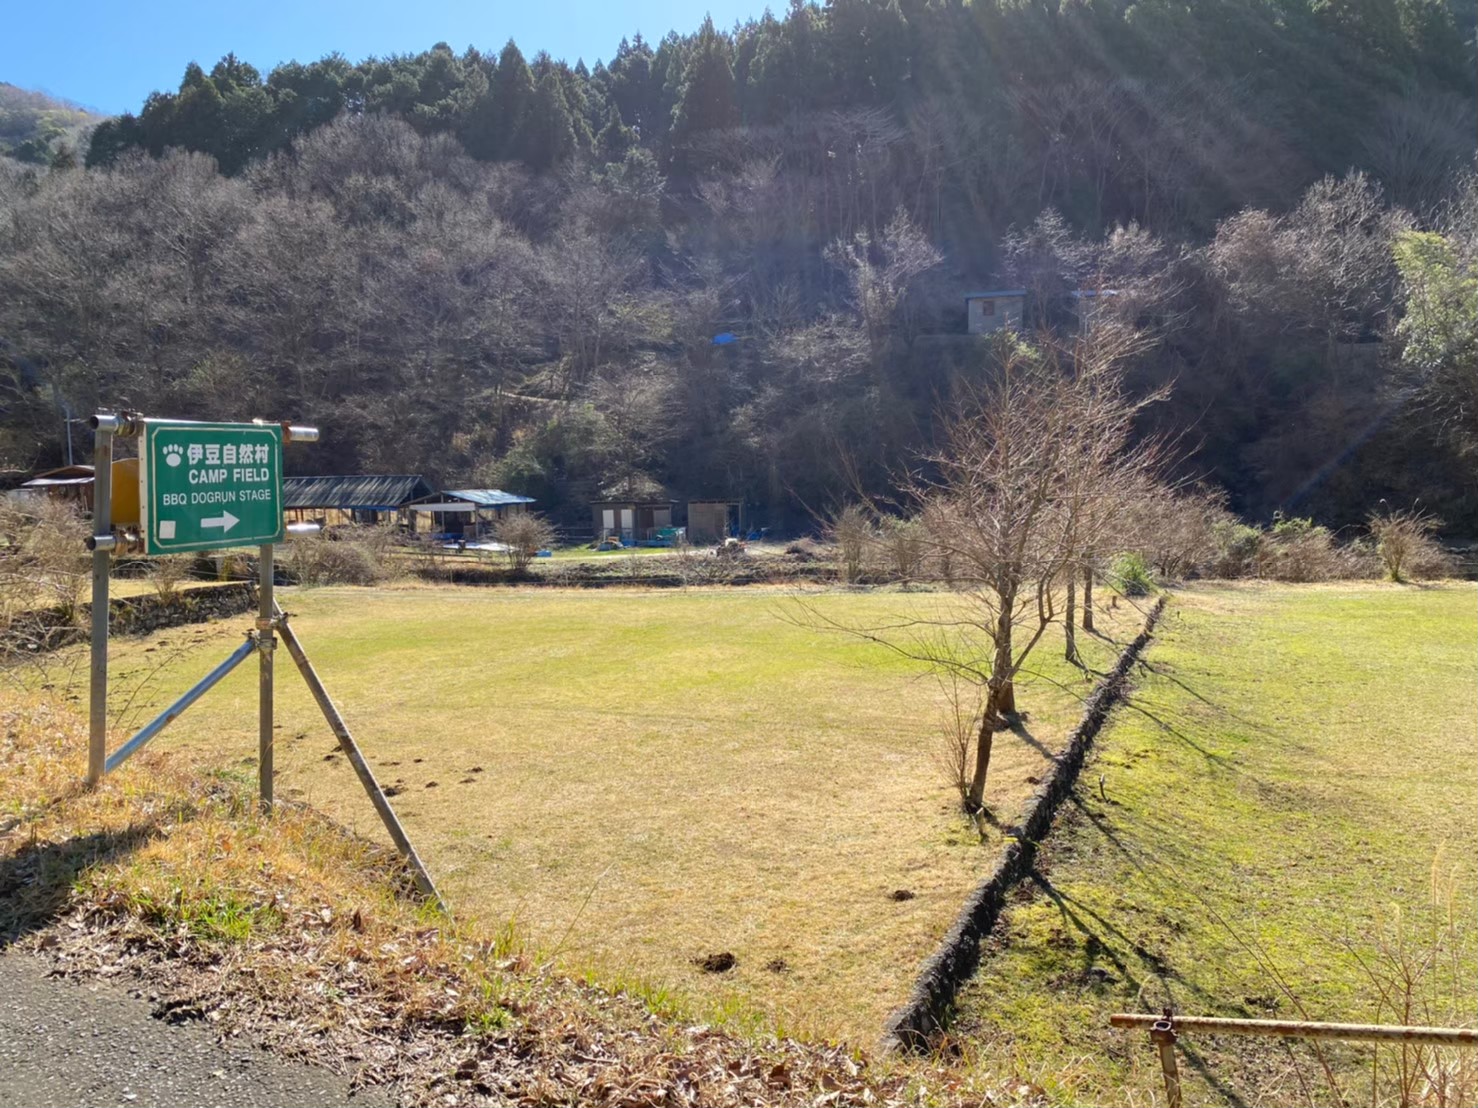 静岡県 伊豆 ドッグラン付き 伊豆自然村キャンプフィールド の情報まとめ 中部キャンプwalker